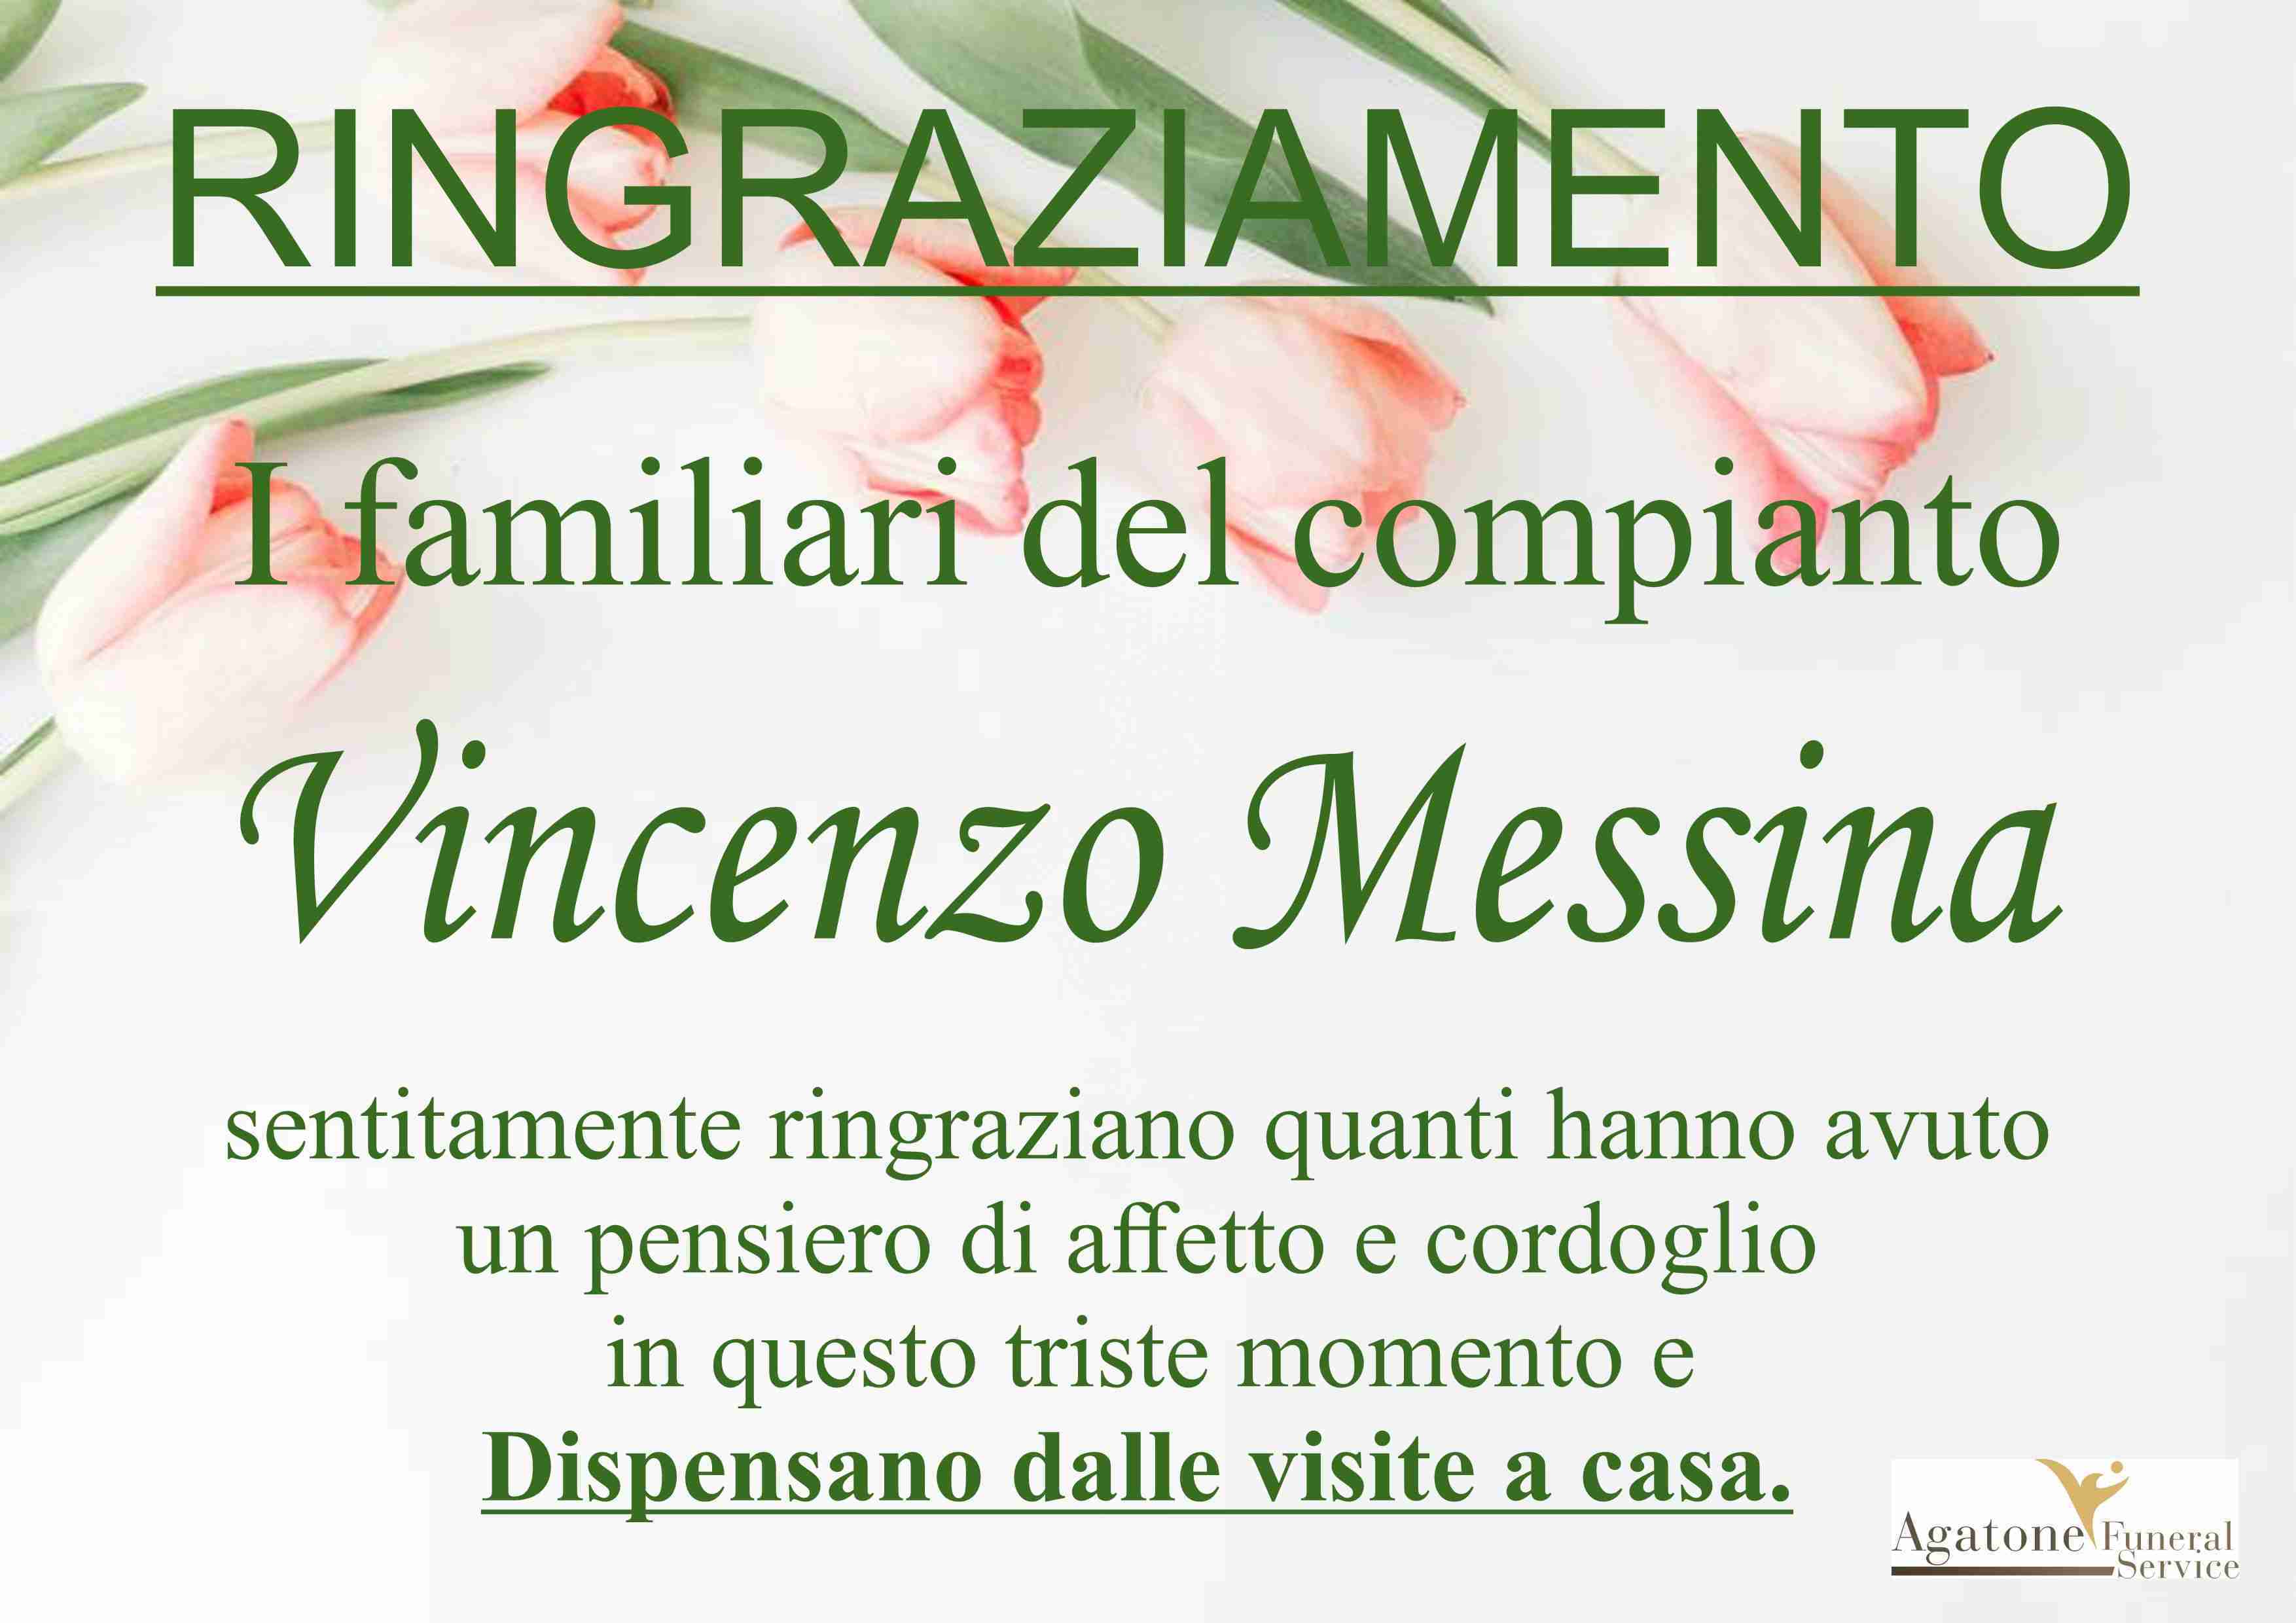 Vincenzo Messina